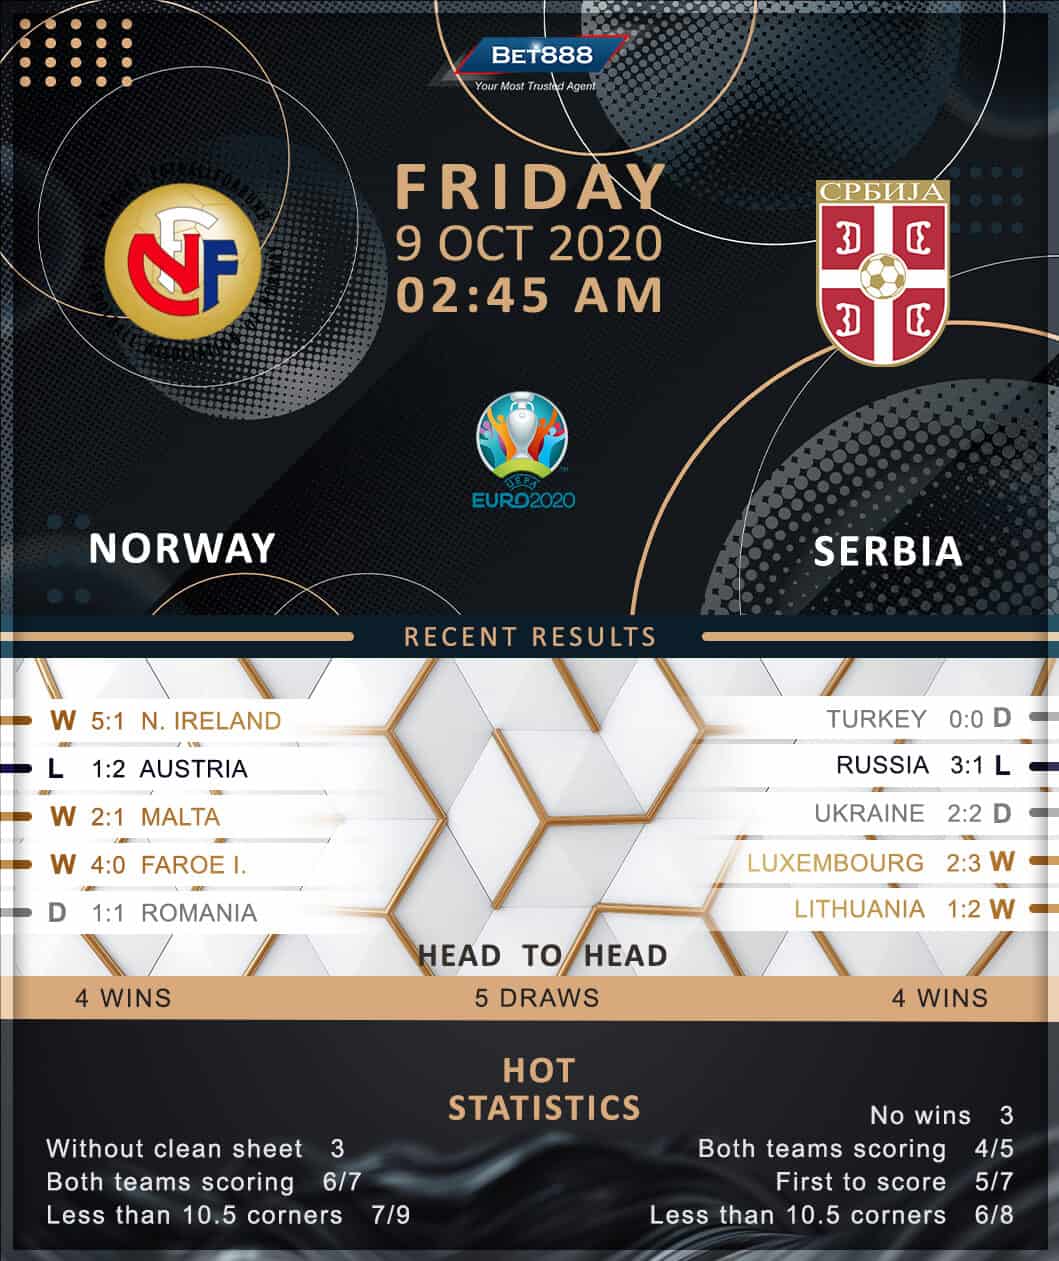 Norway vs Serbia 09/10/20